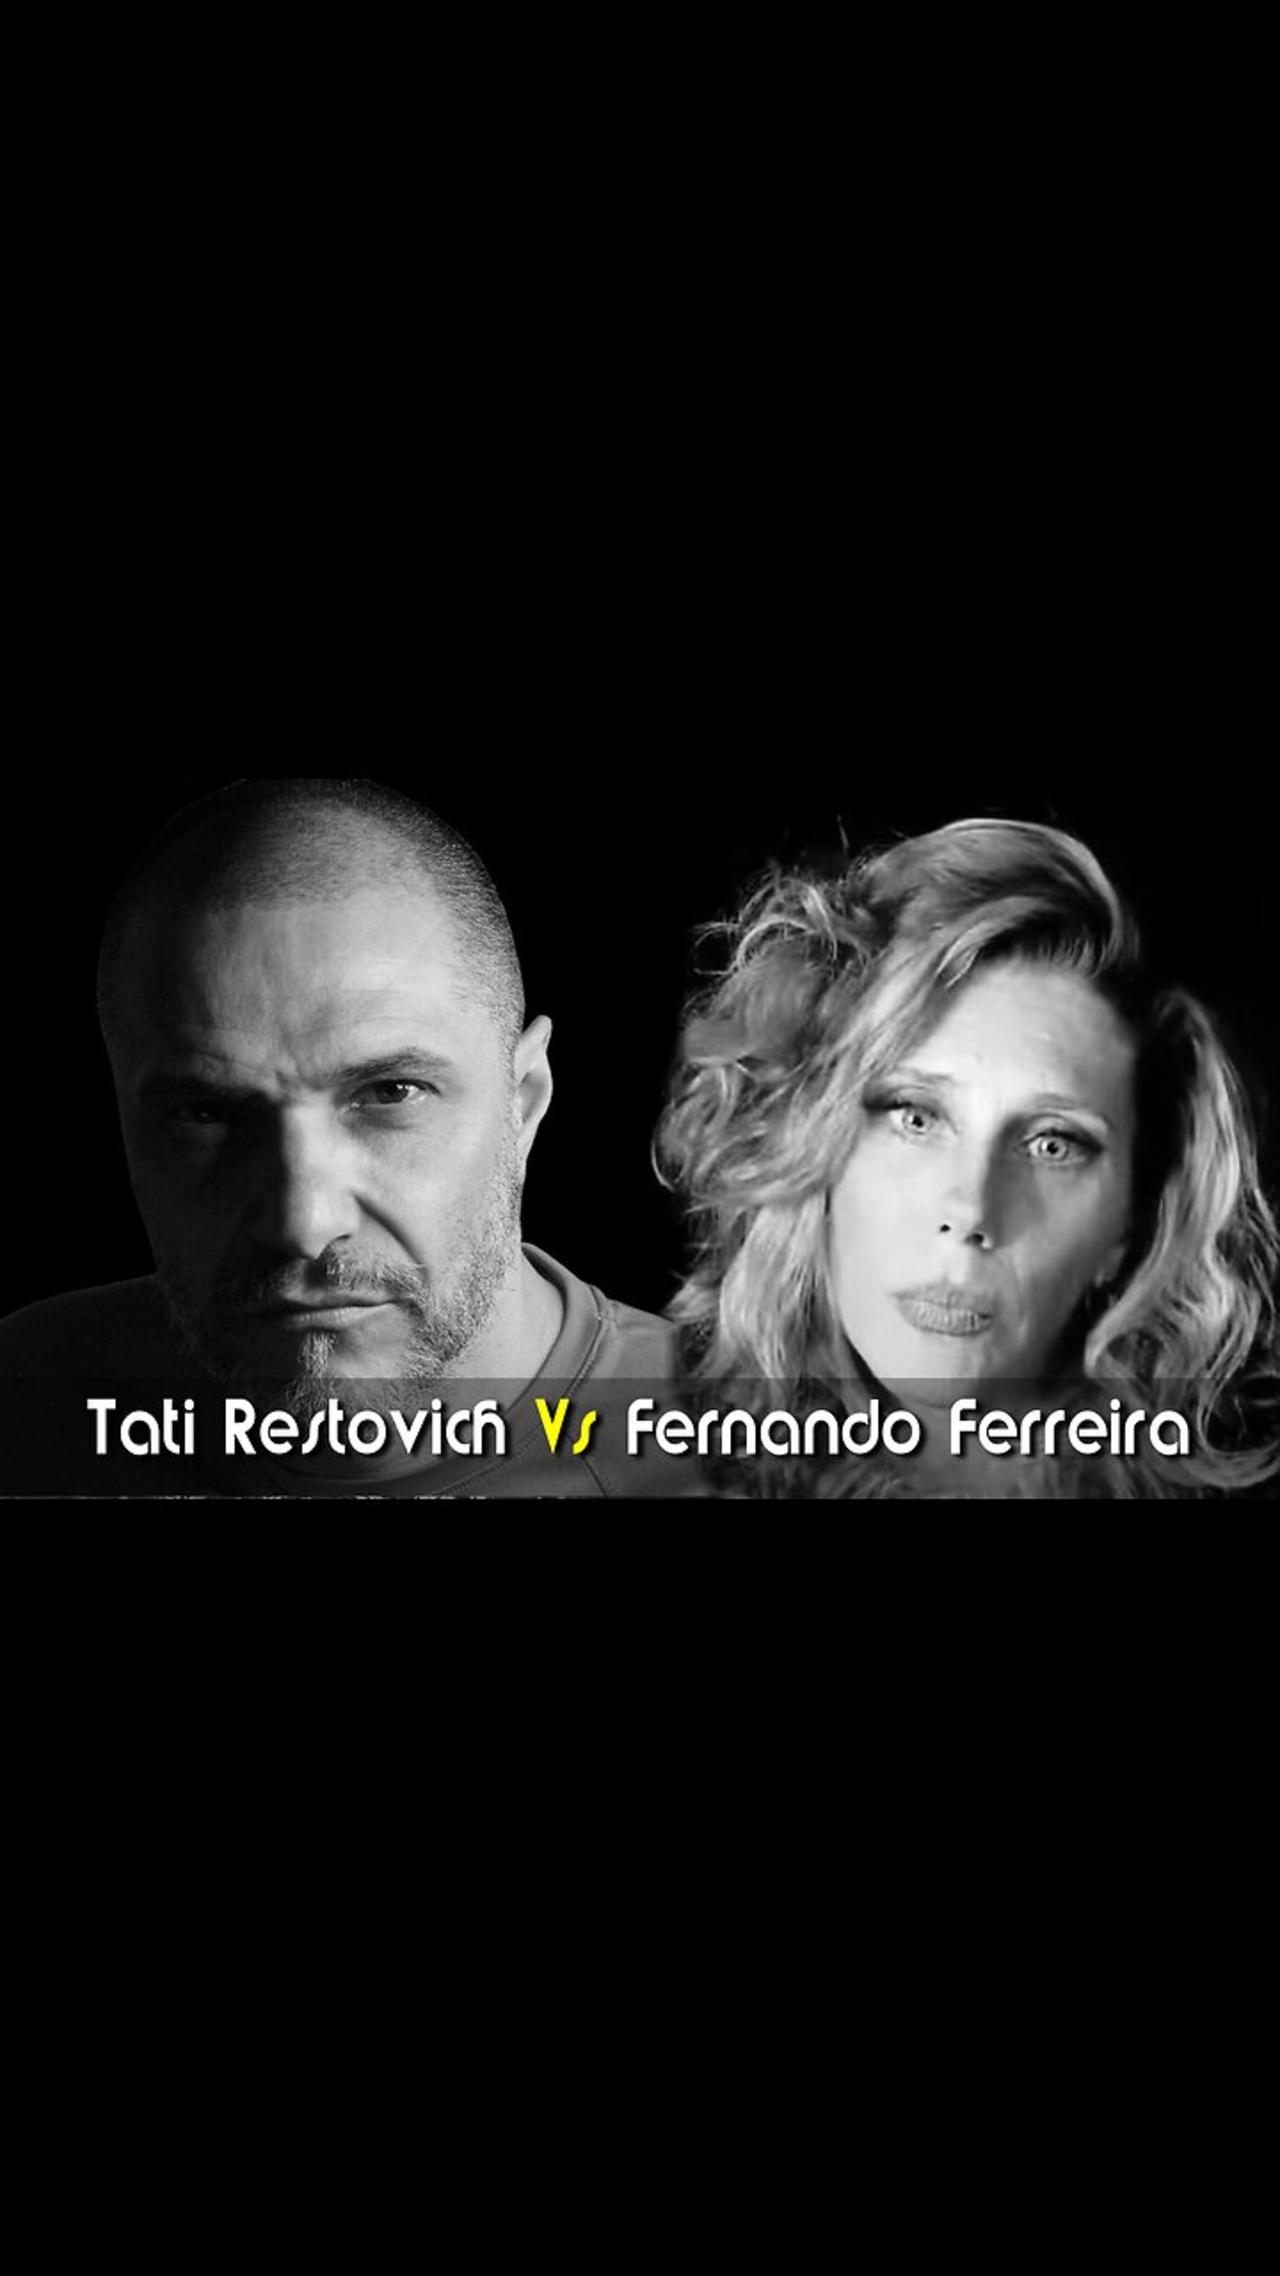 Tati Restovich entrevista a Fernando Ferreira